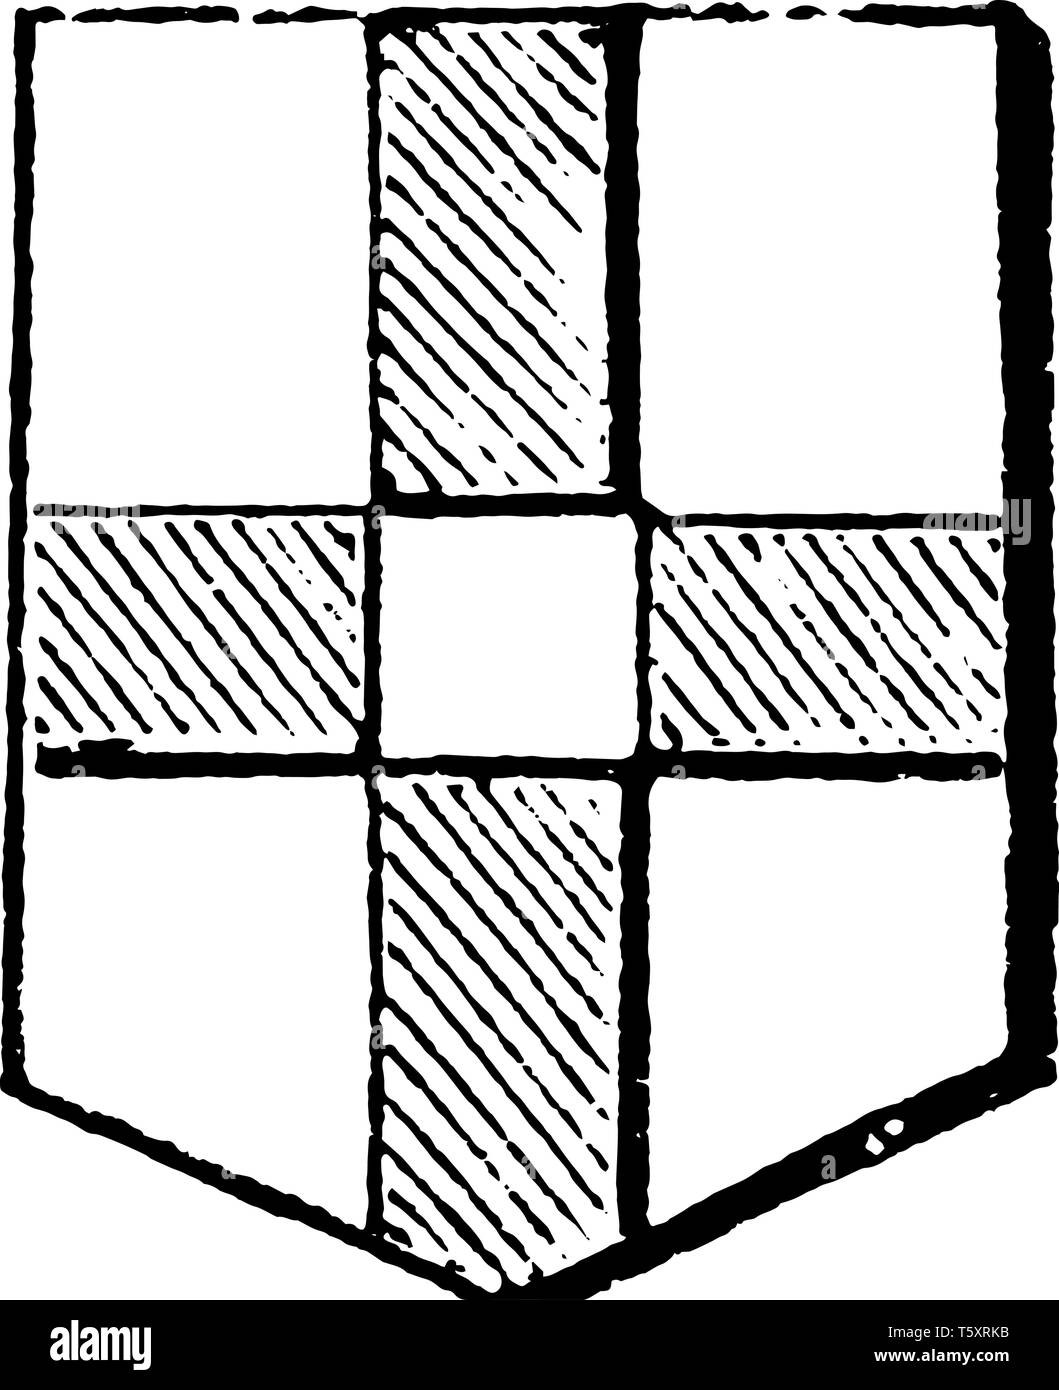 Kreuz Quarter-Pierced wurde ursprünglich Adeligsten, vintage Strichzeichnung oder Gravur Abbildung. Stock Vektor